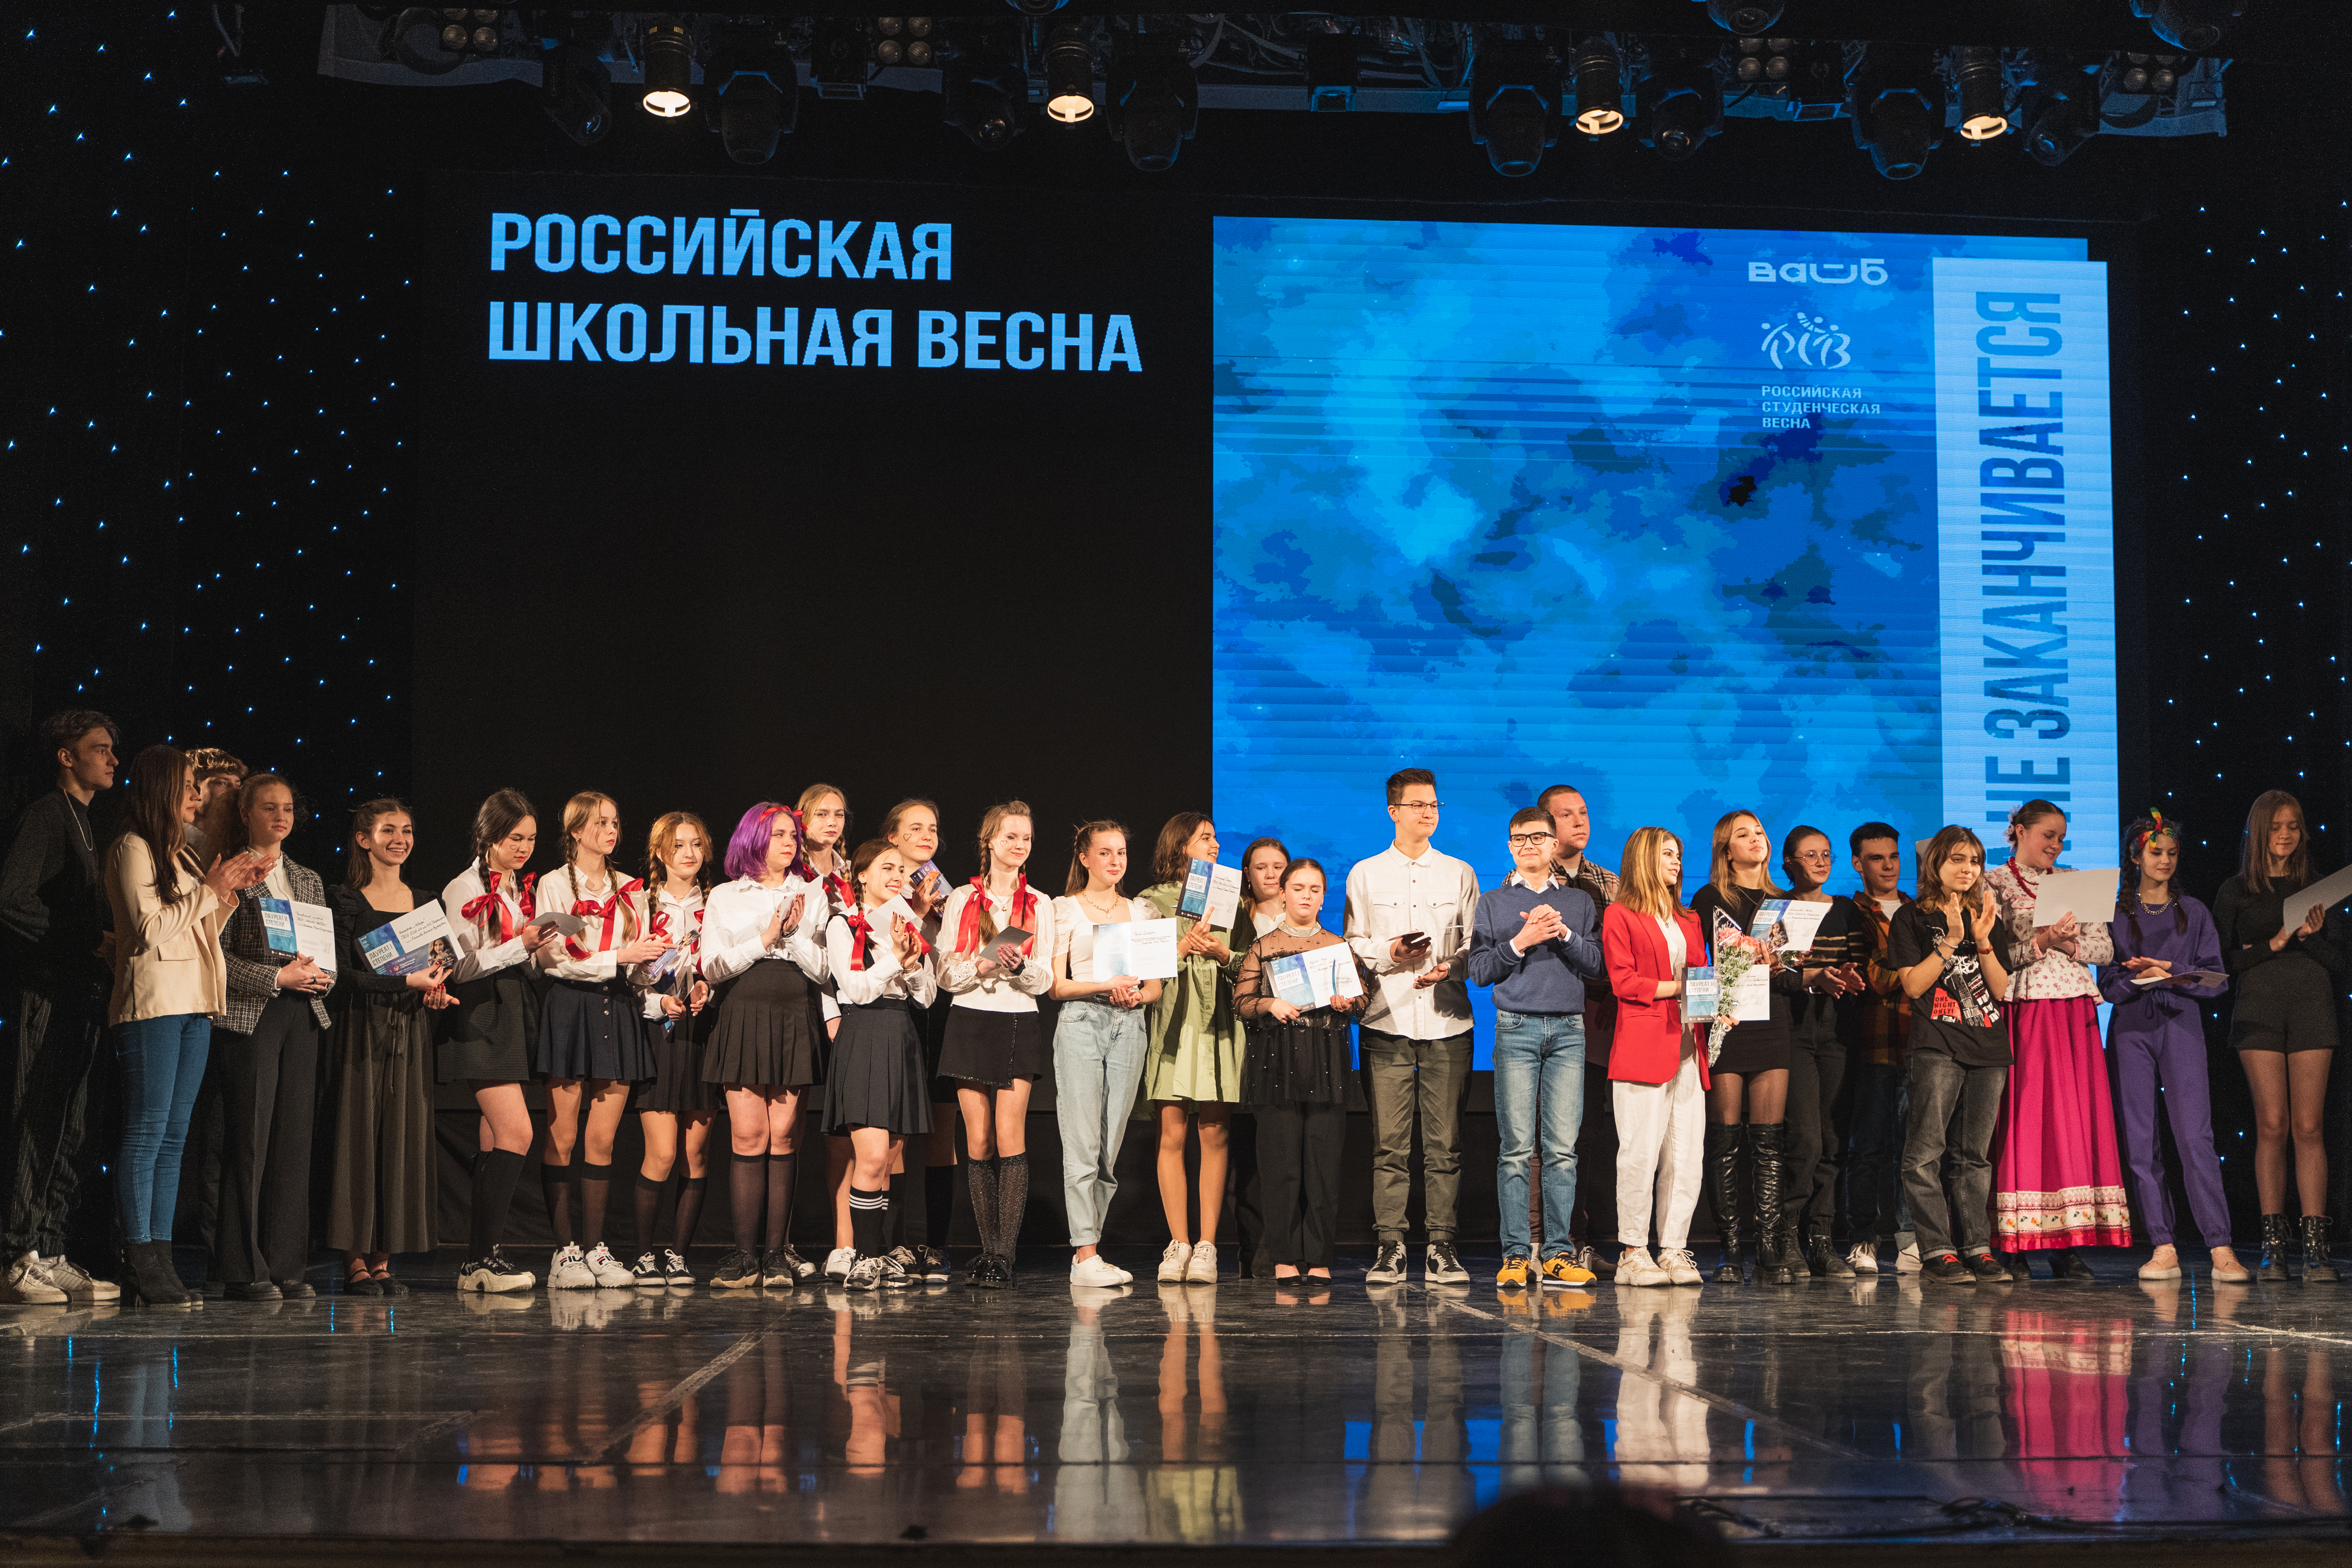 В Севастополе состоялся Творческий фестиваль «Российская школьная весна» 